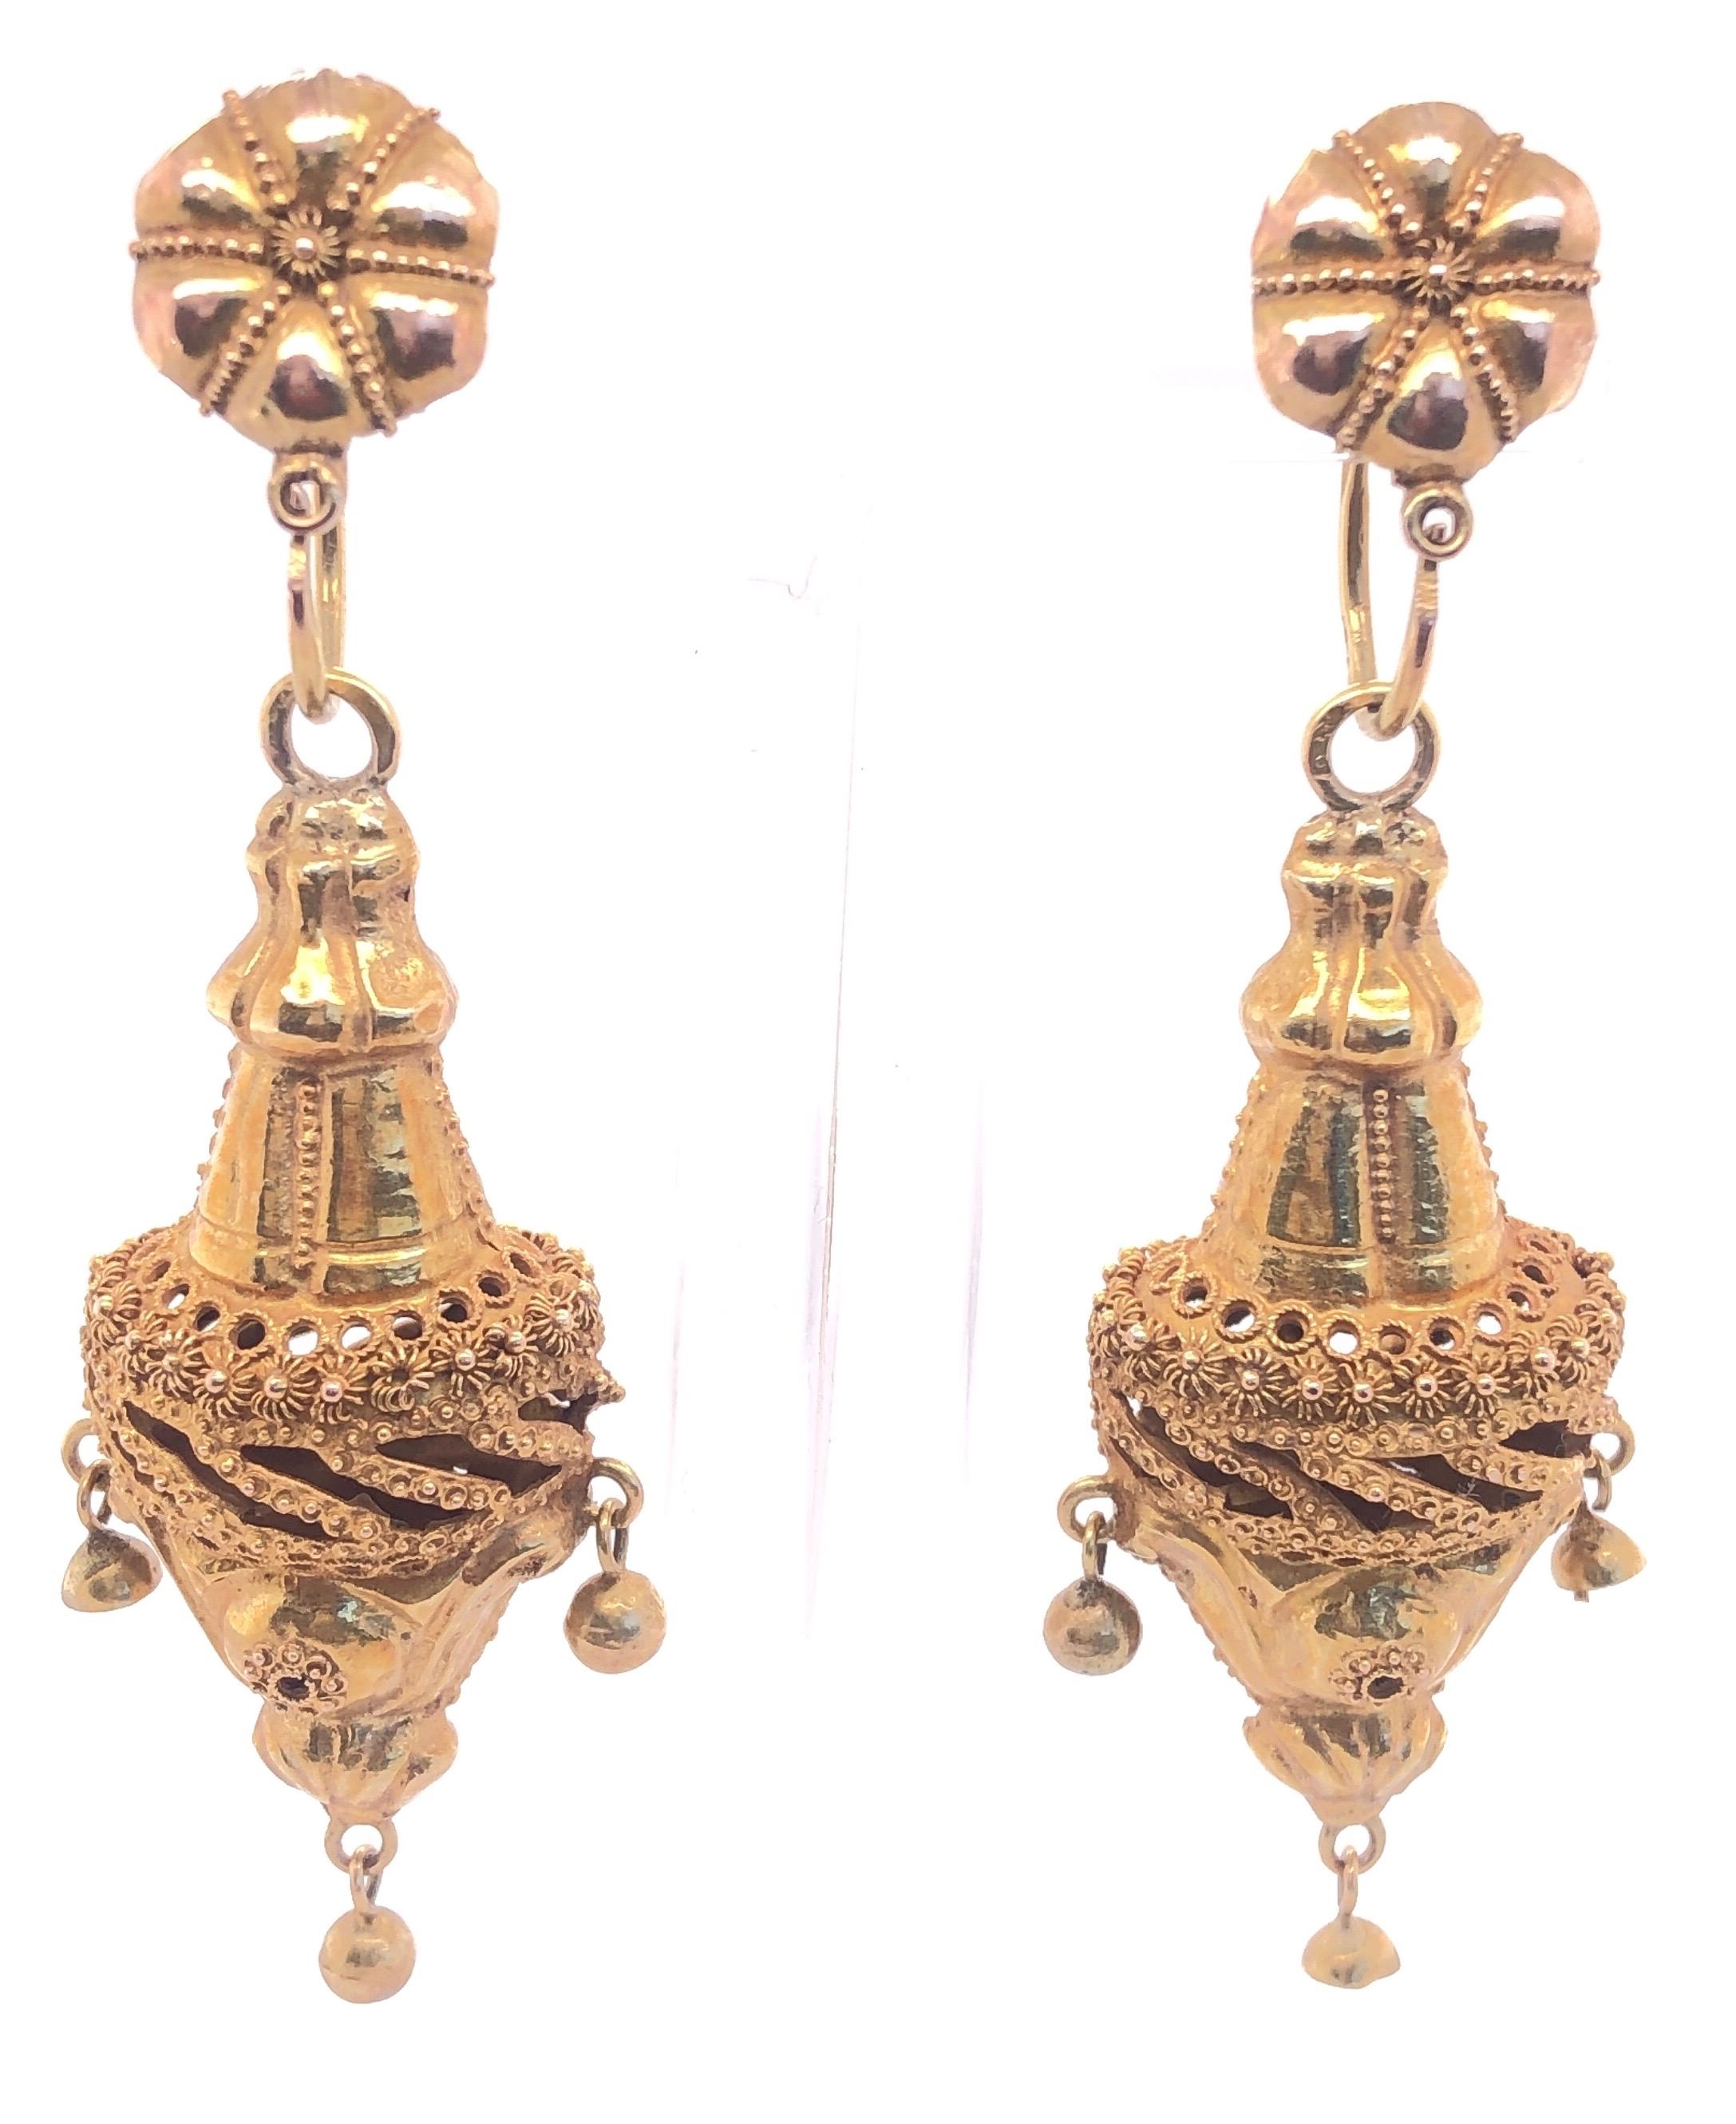  14 Karat Gelbgold frühe 20. Jahrhundert viktorianische Ohrringe.
11 Gramm Gesamtgewicht.
Länge:  3 Zoll
Breite: 1 Zoll